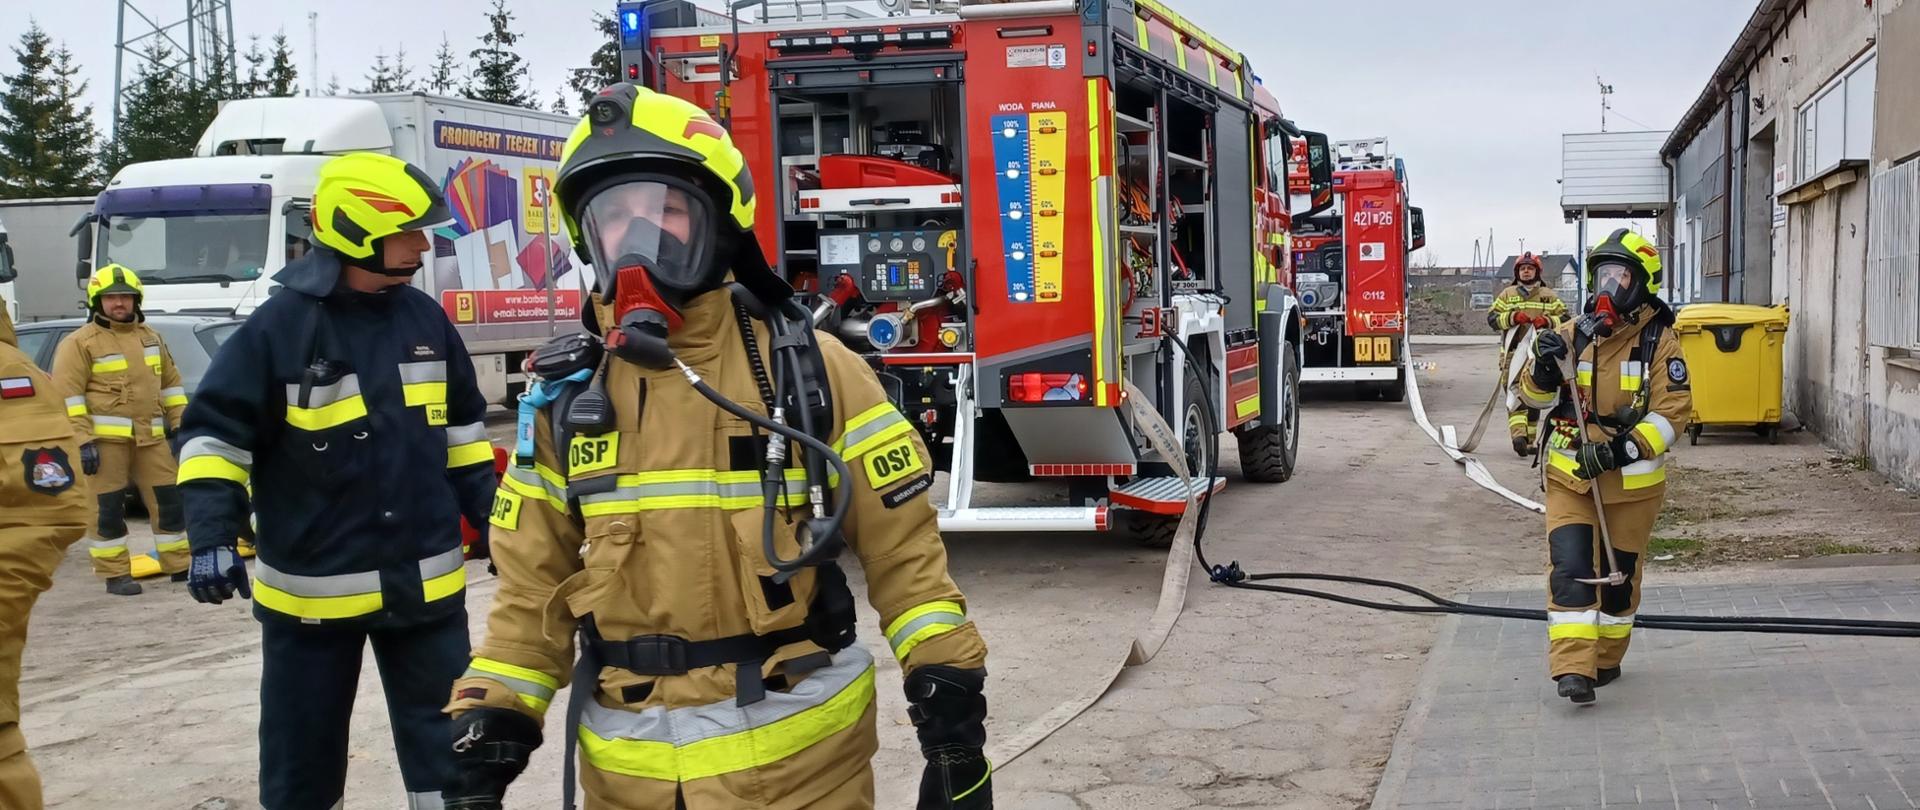 Na pierwszym planie widać strażaków w sprzęcie ochrony układu oddechowego przygotowaną do wejścia do budynku objętego pożarem oraz kierującego działaniem ratowniczym. W tle stoją samochody pożarnicze na terenie przedsiębiorstwa.